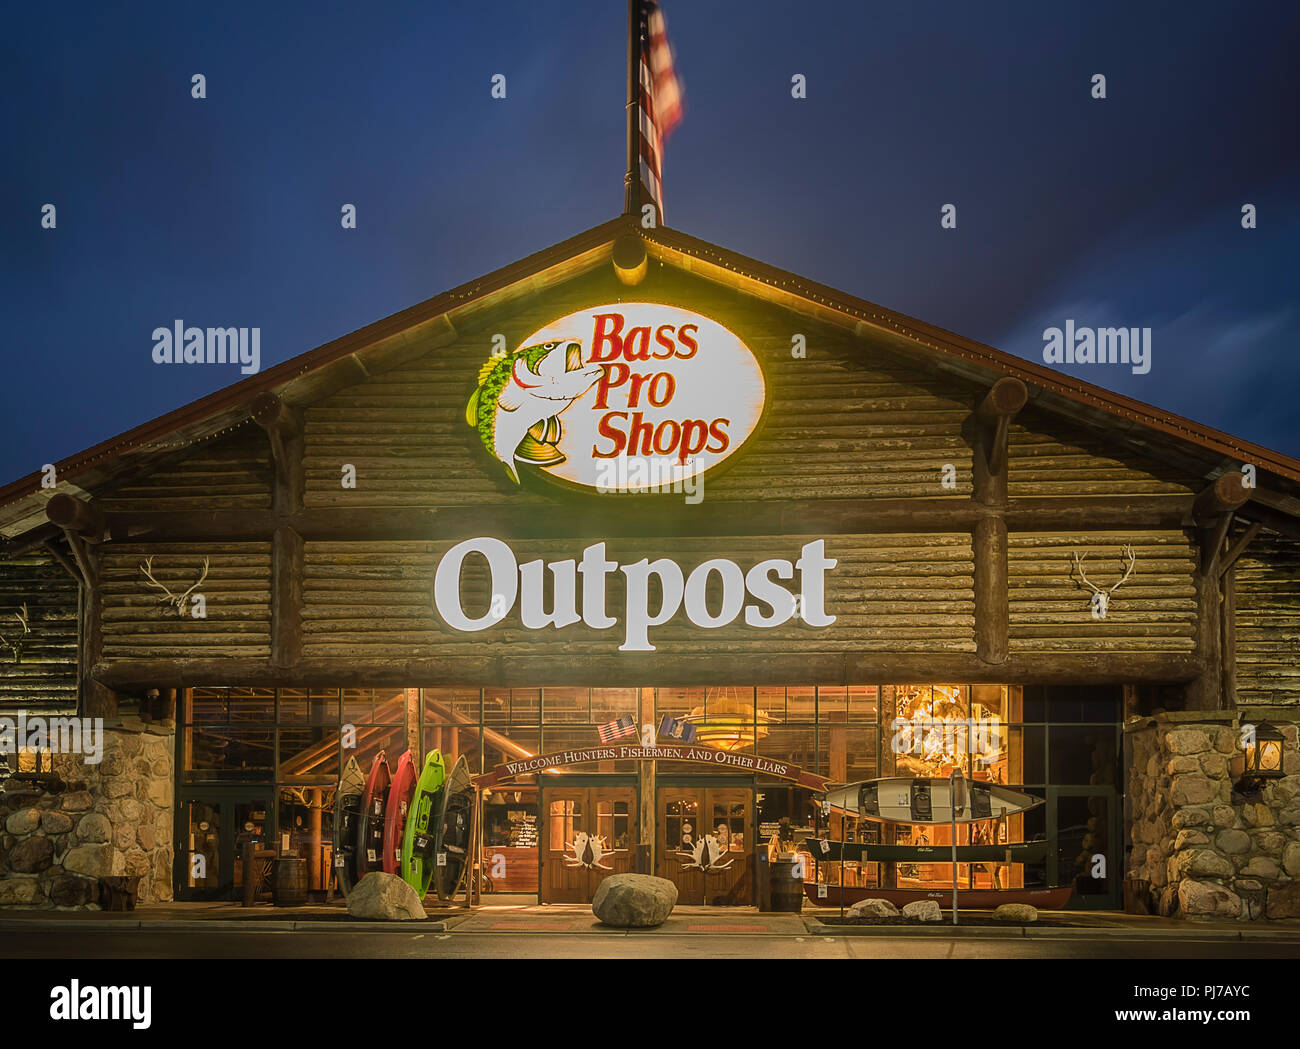 Utica, New York, USA - 3 septembre 2018 : Bass Pro Shops panneau extérieur et le logo pendant la nuit. Bass Pro Shops est un détaillant de chasse, pêche, campin Banque D'Images